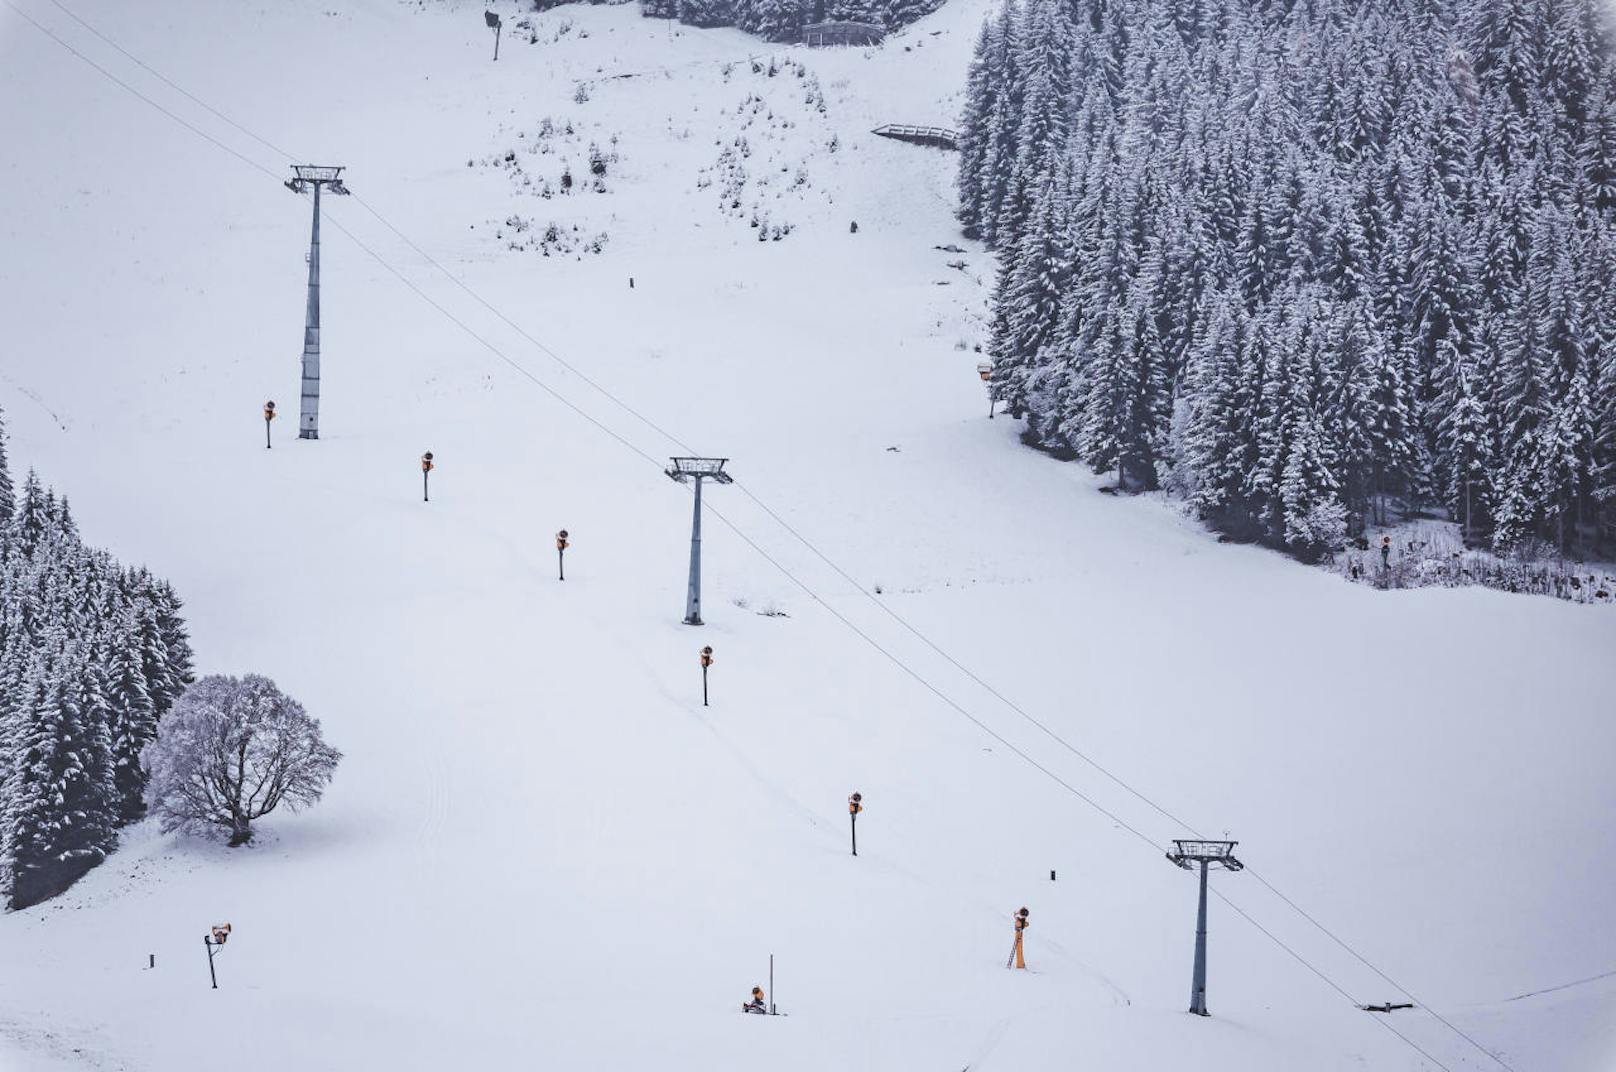 Schneekanonen und Skiliftstützen auf einer Skipiste. Die Vorbereitungen für die neue Skisaison laufen auf Hochtouren, aufgenommen am 12. November 2019, Saalbach-Hinterglemm.